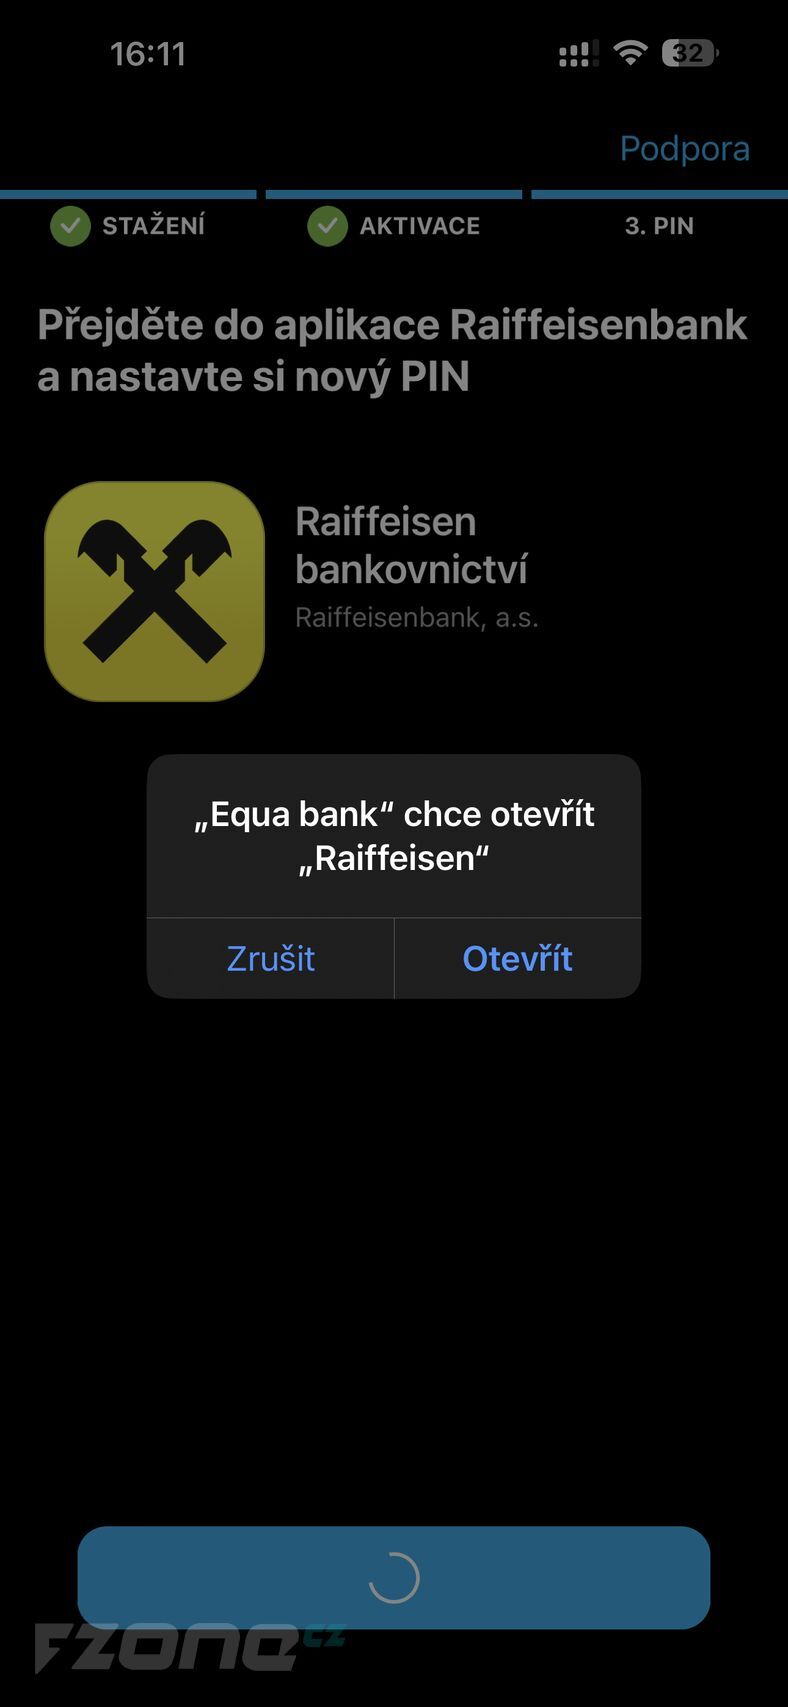 Equa bank a Raiffeisenbank